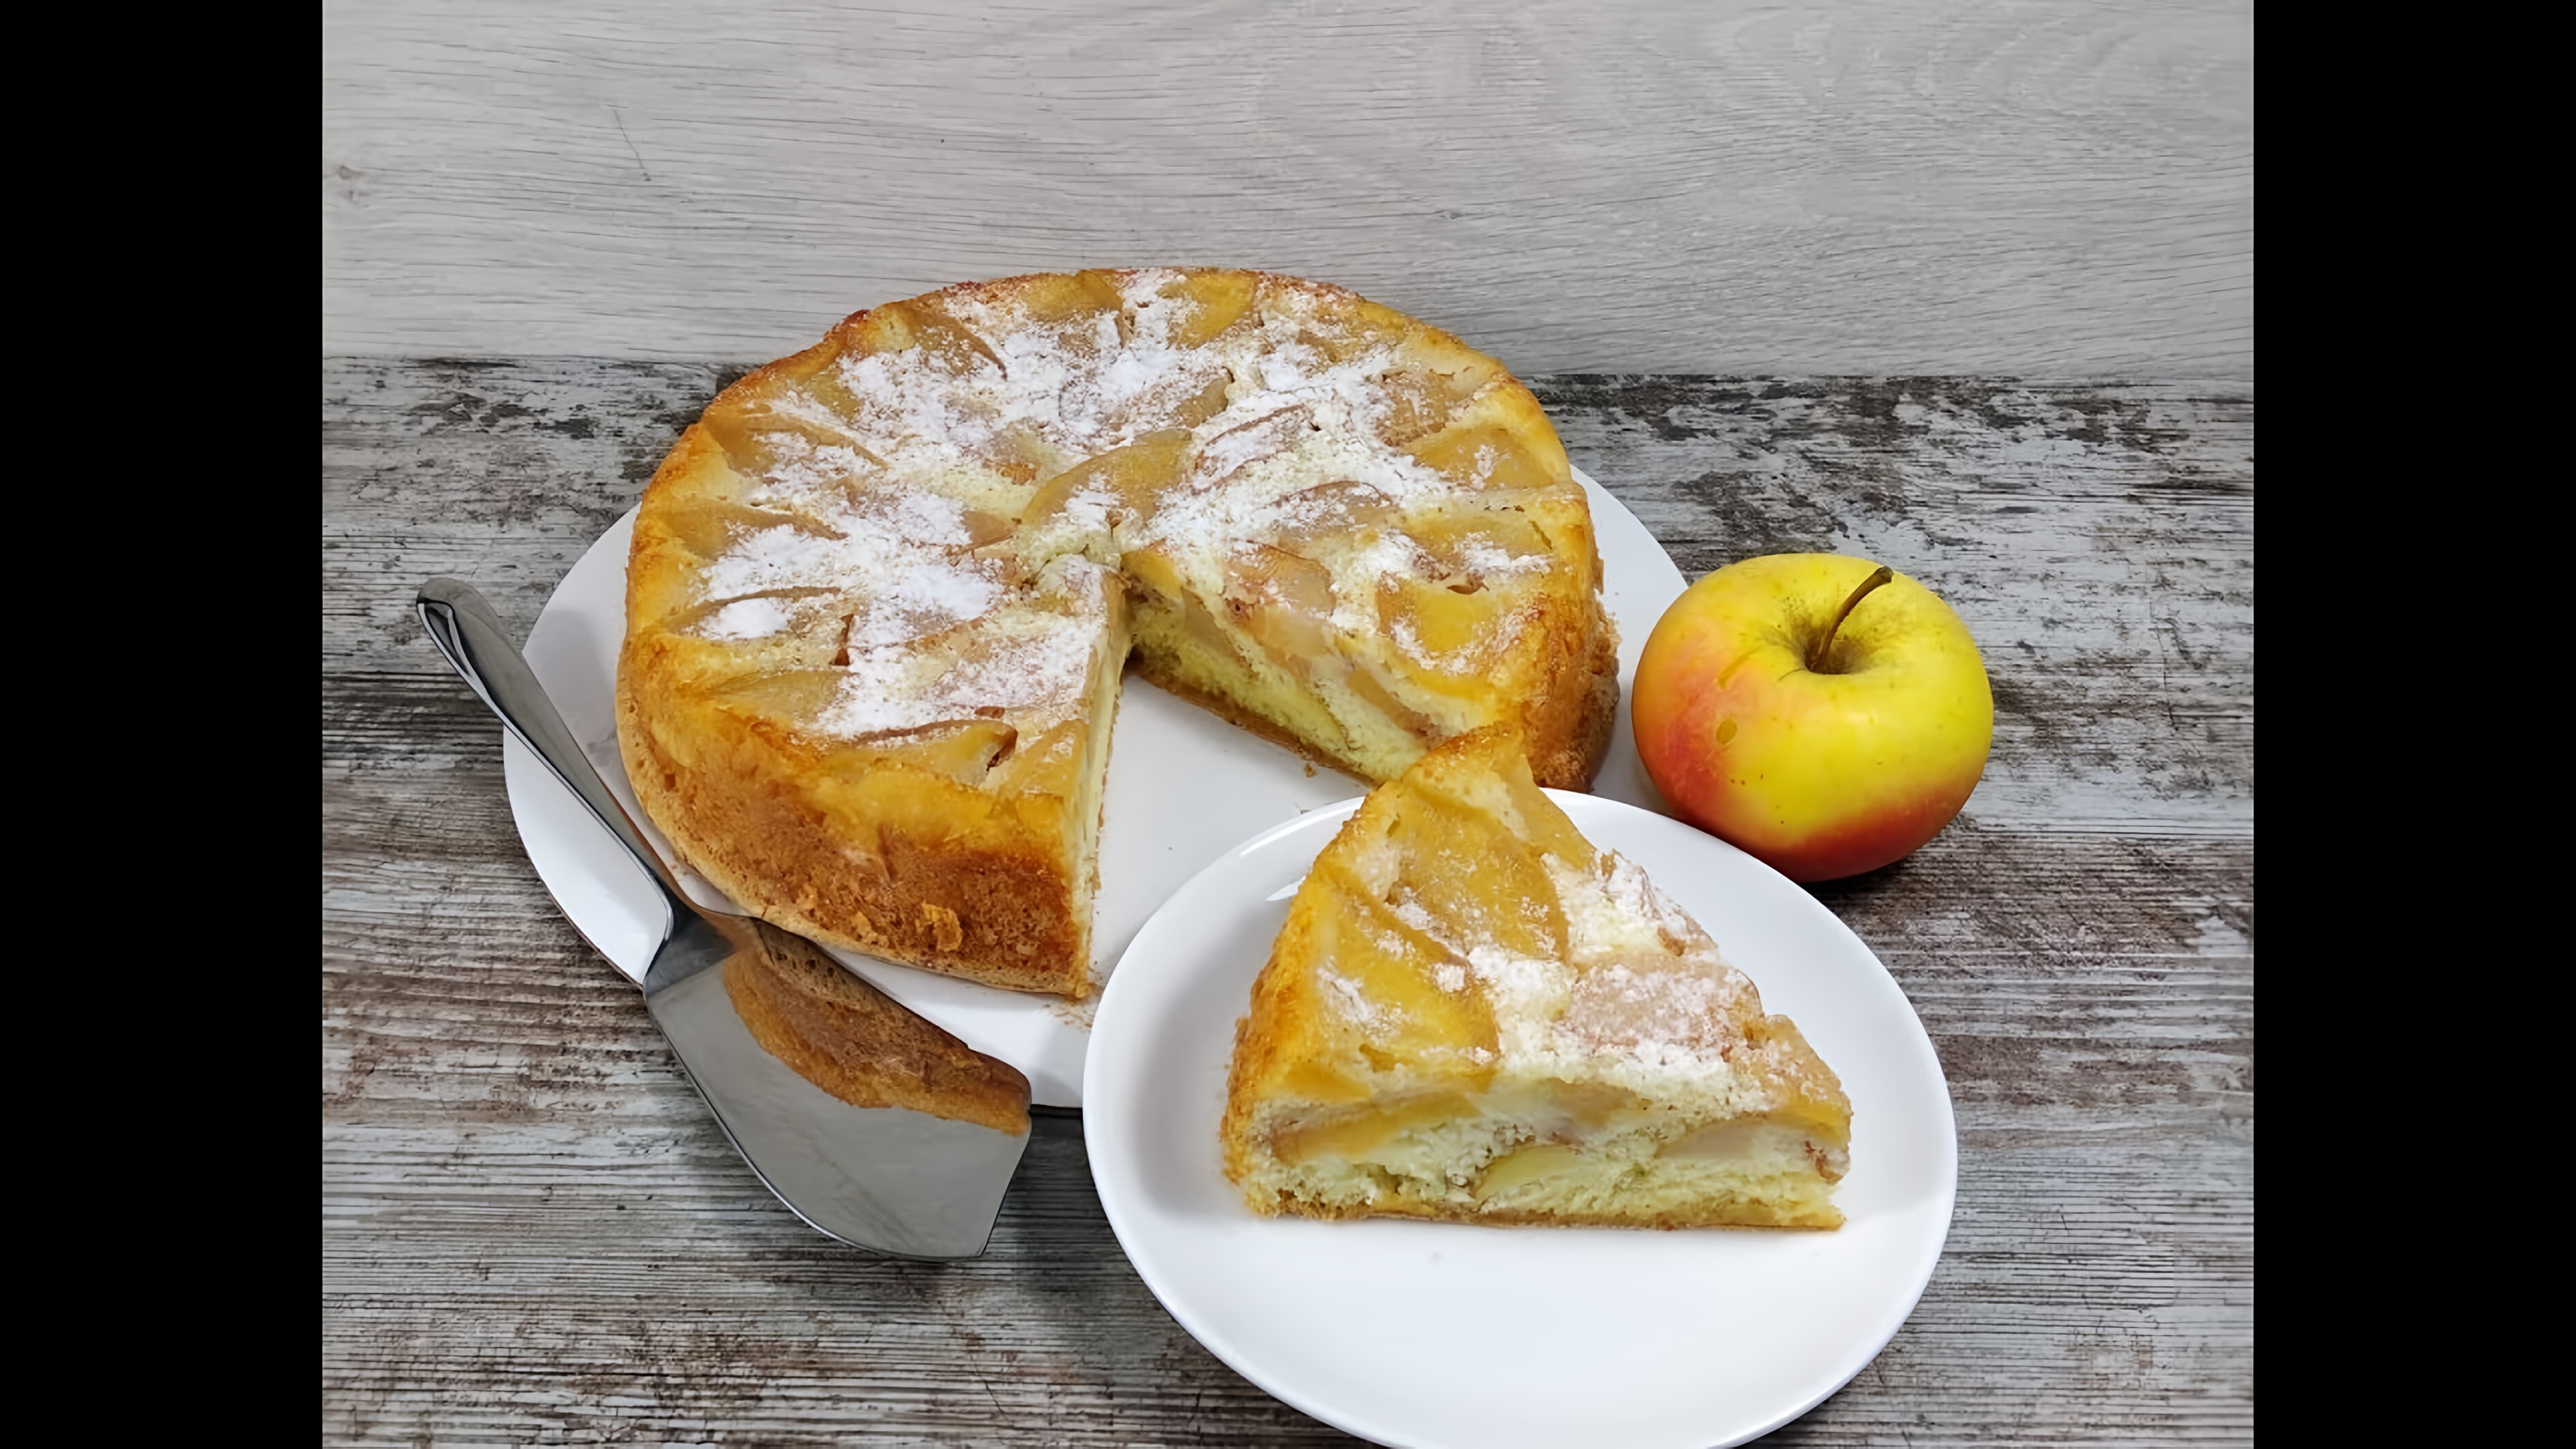 В данном видео демонстрируется рецепт приготовления шарлотки с яблоками и грушами